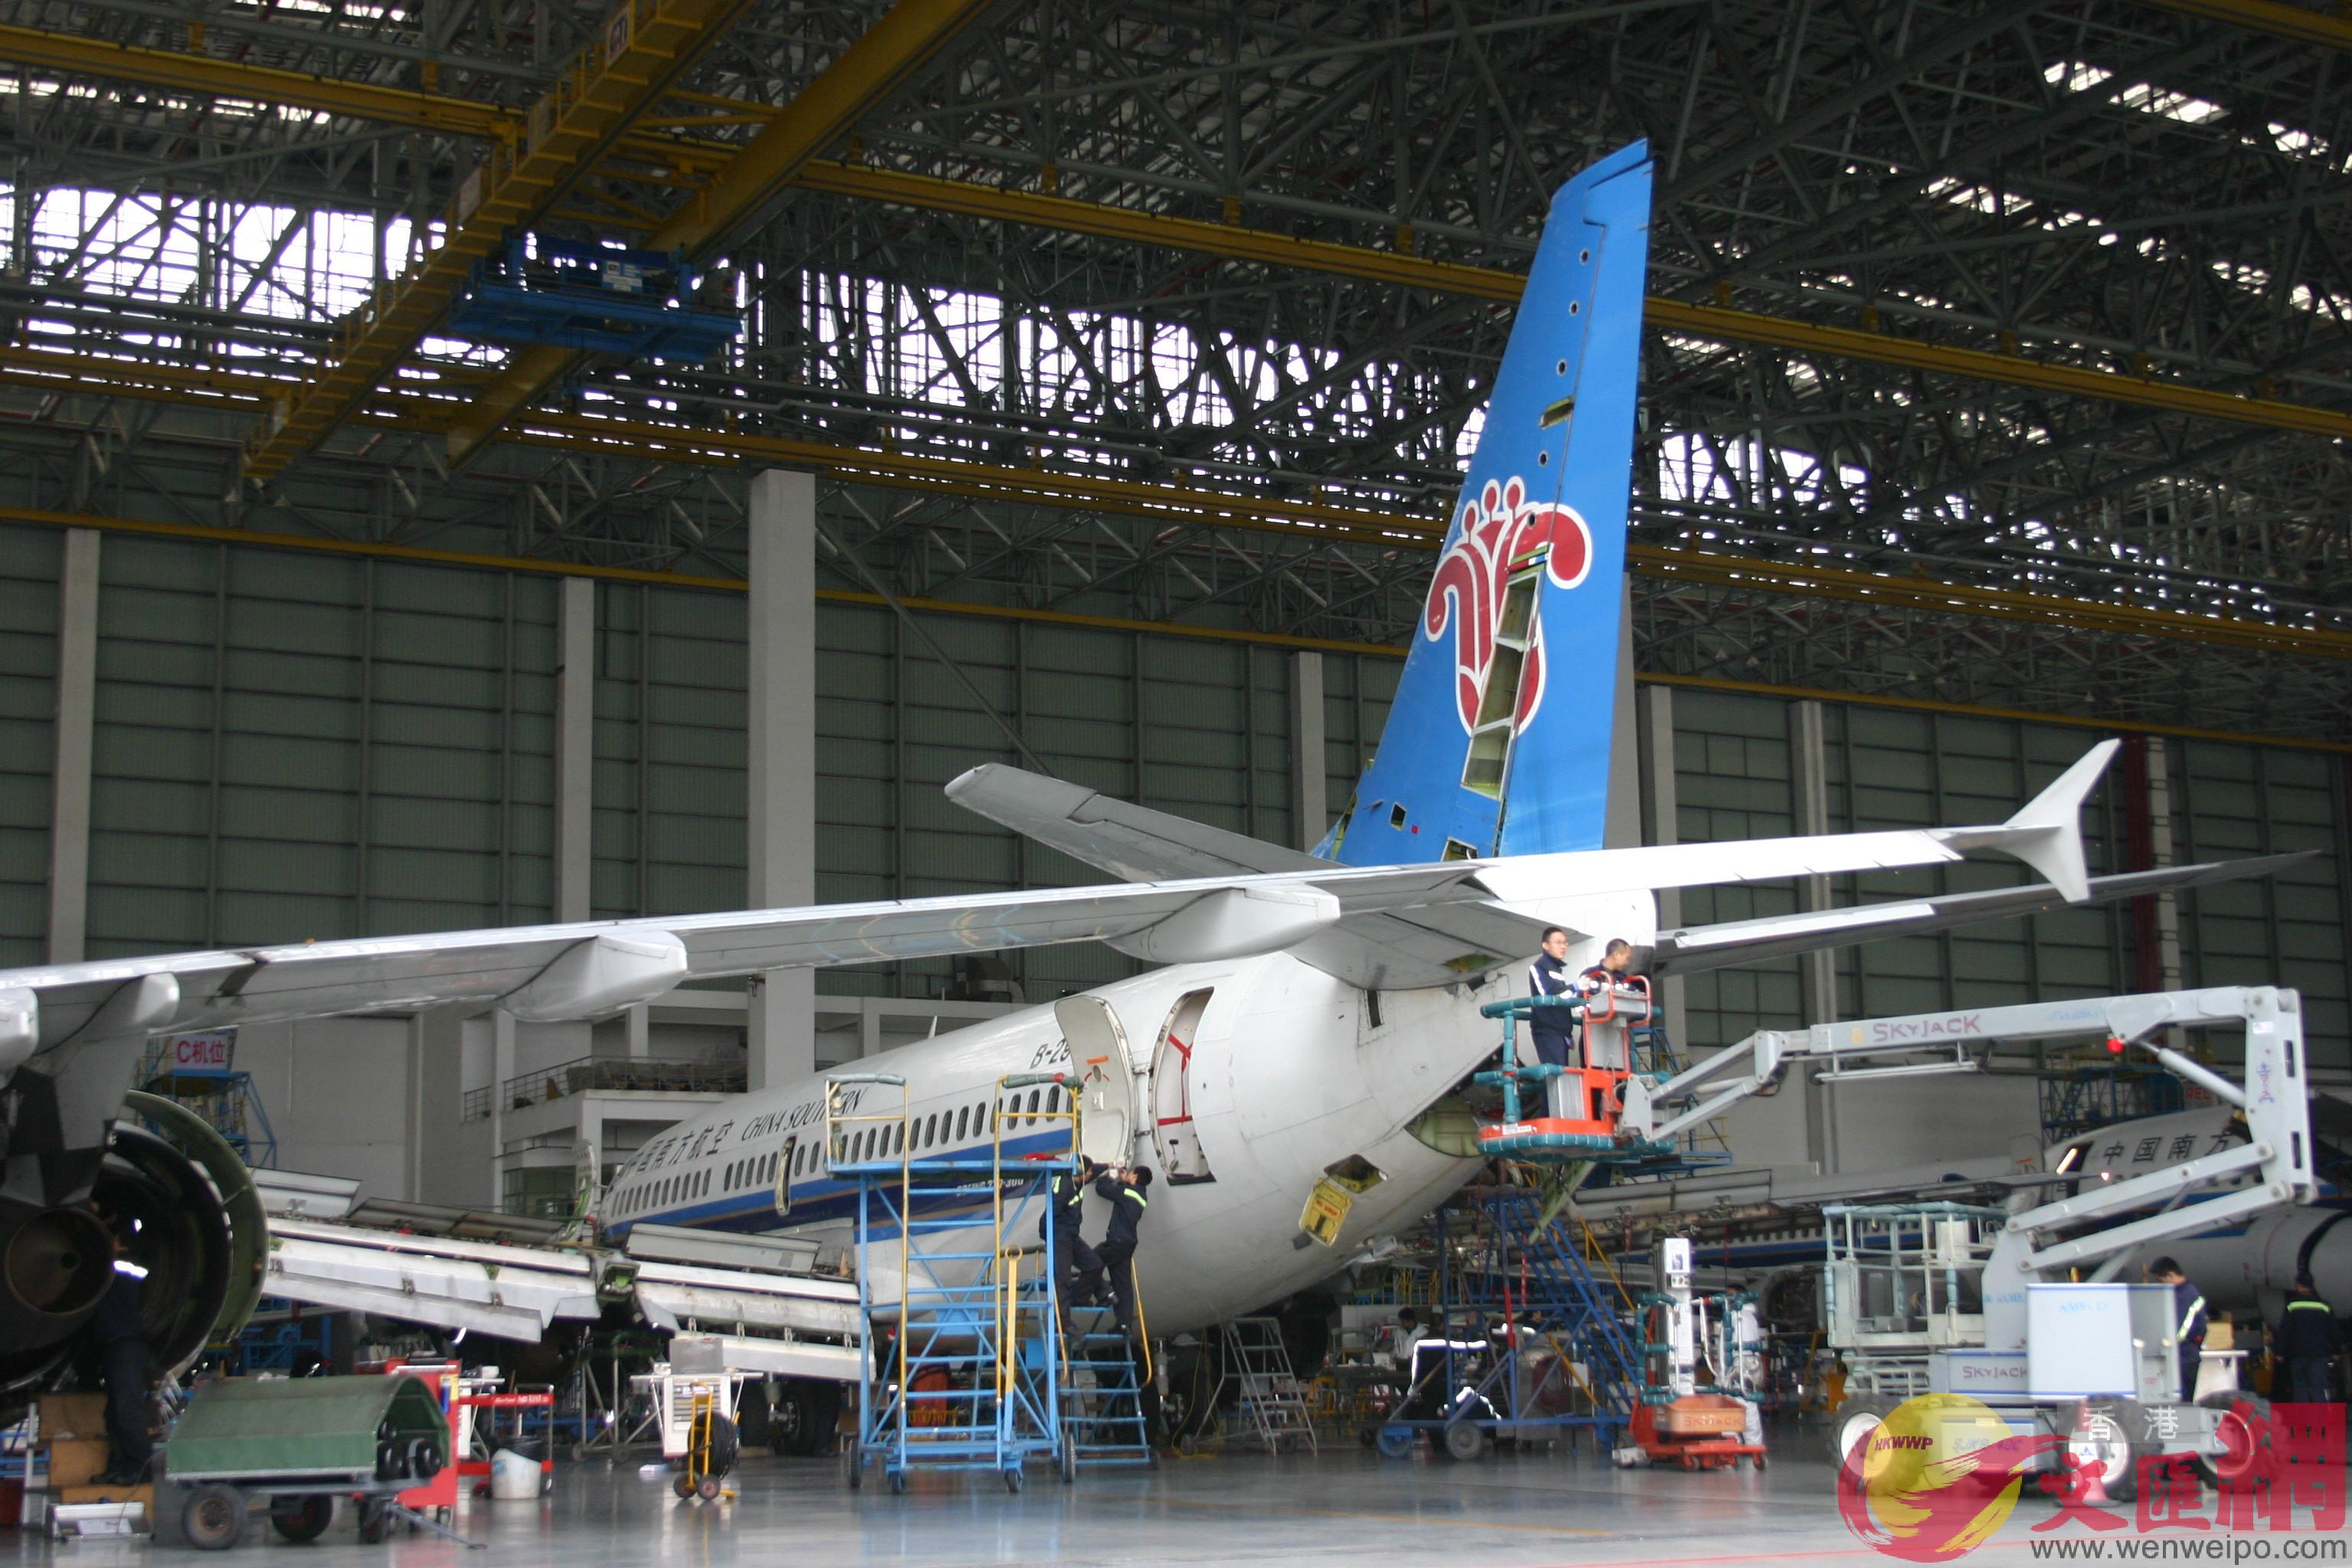 廣州空港經濟區已初步形成全國最大飛機維修基地和全球最大飛機客改貨基地。